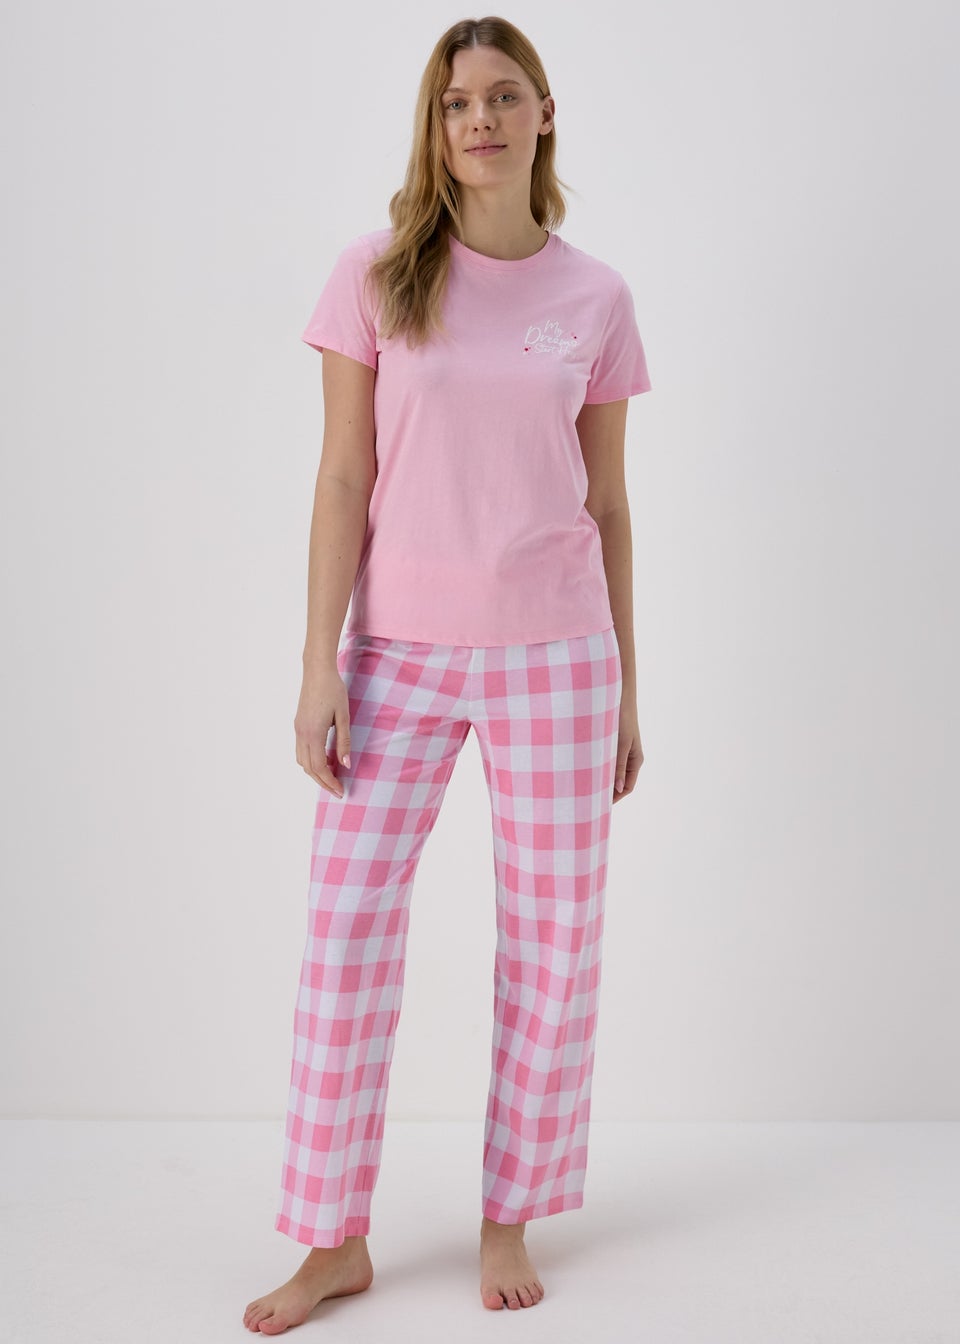 Pink Check Pyjama Set